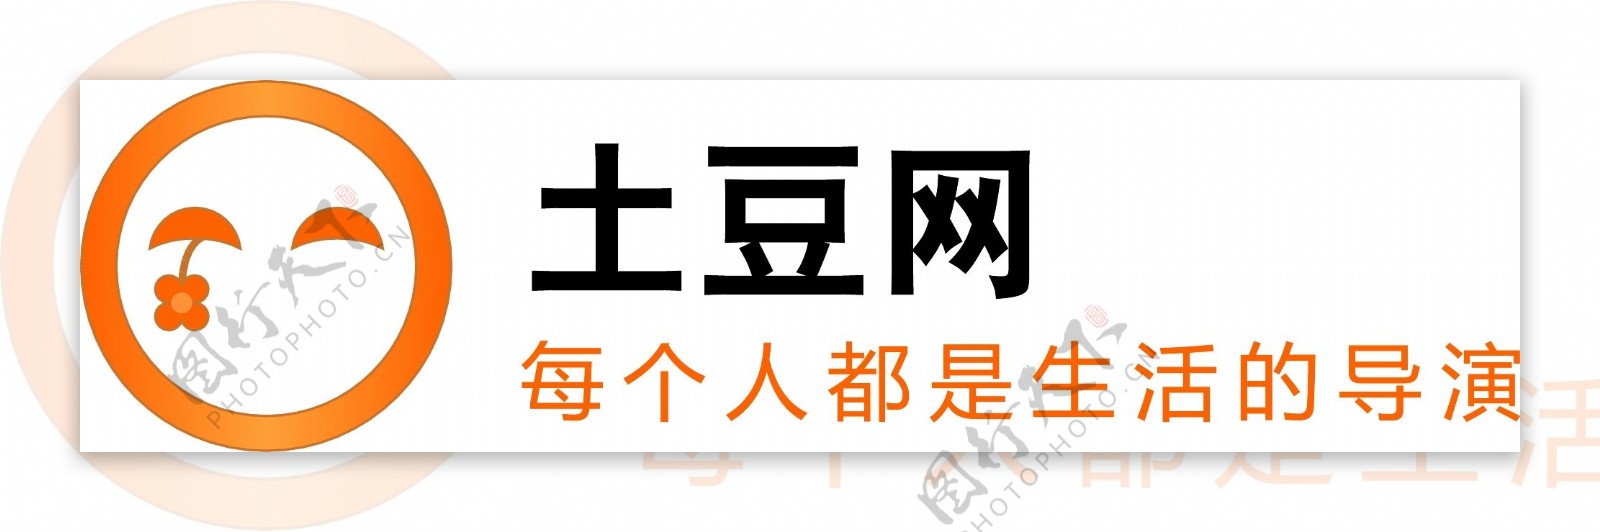 土豆Logo